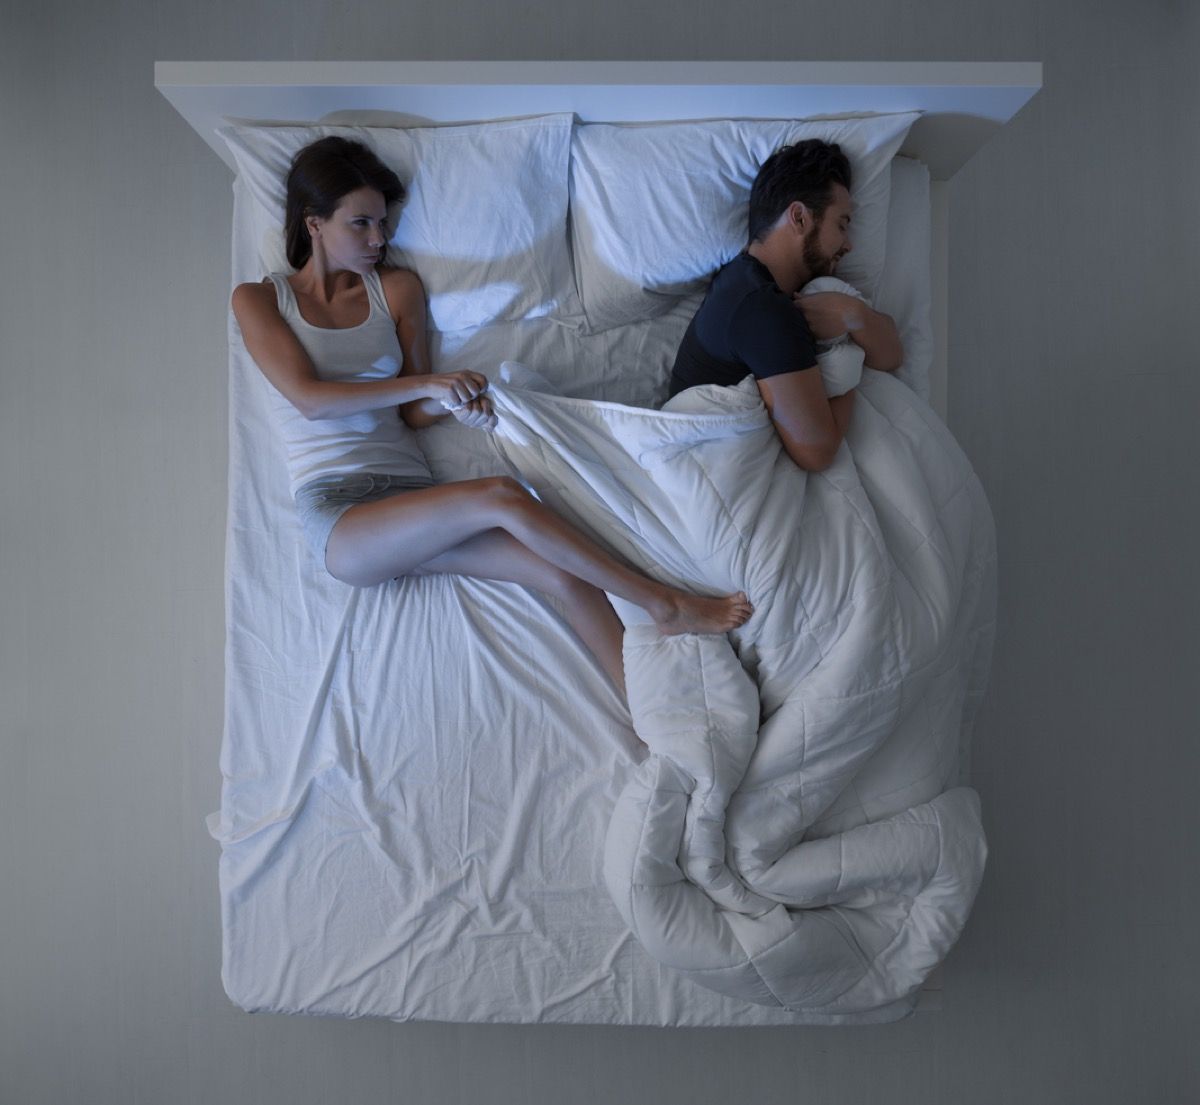 wanita kulit putih menarik selimut dari pria kulit putih yang memeganginya di tempat tidur